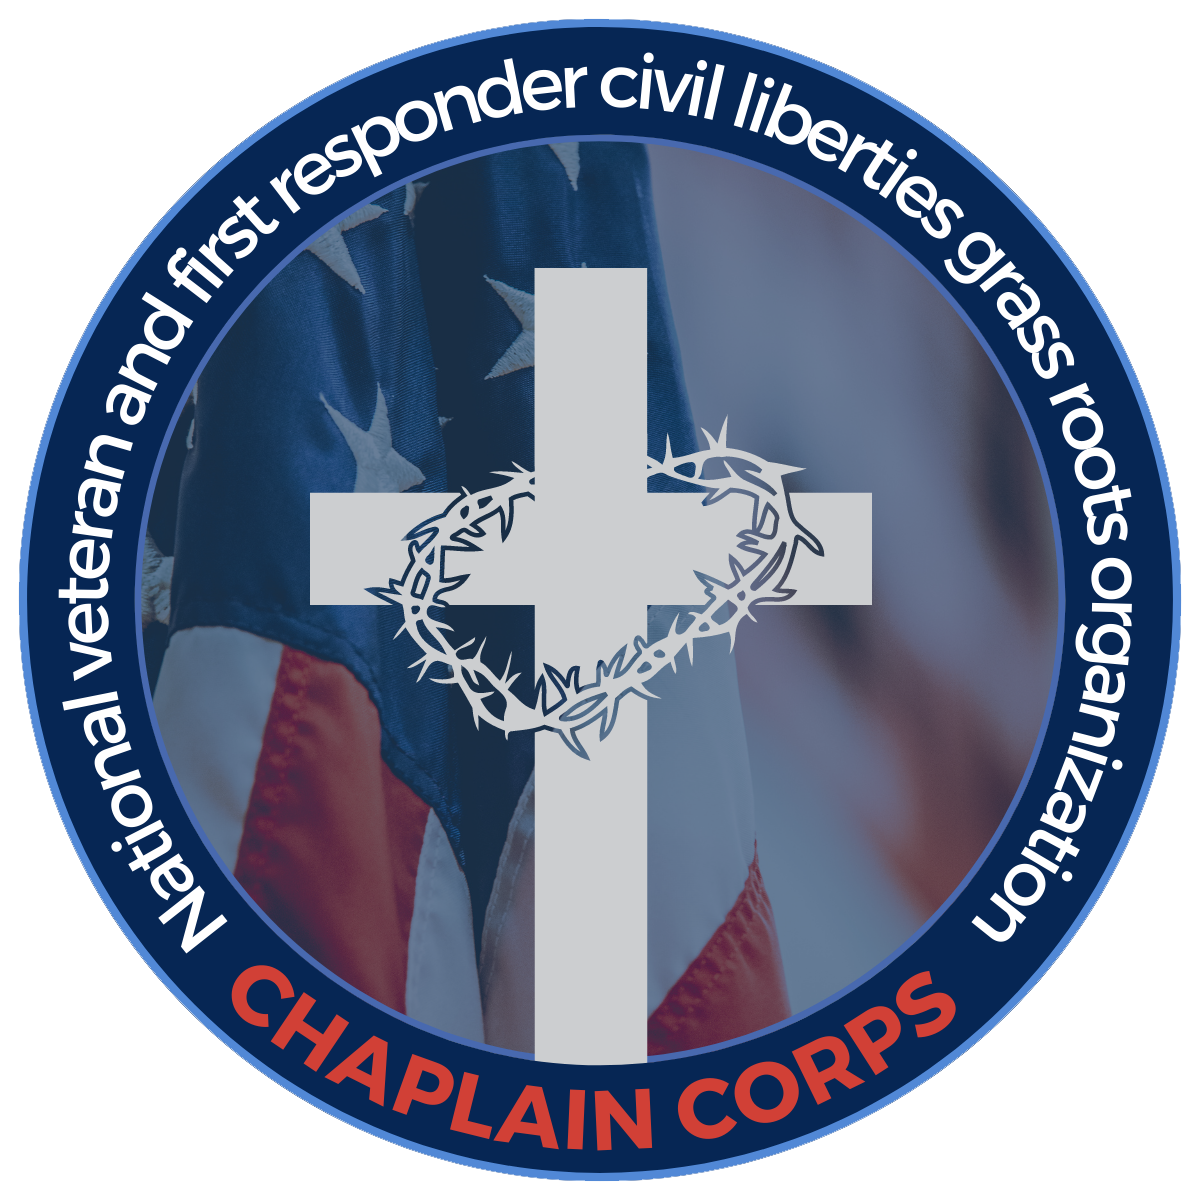 About - Vet Chaplain Corp